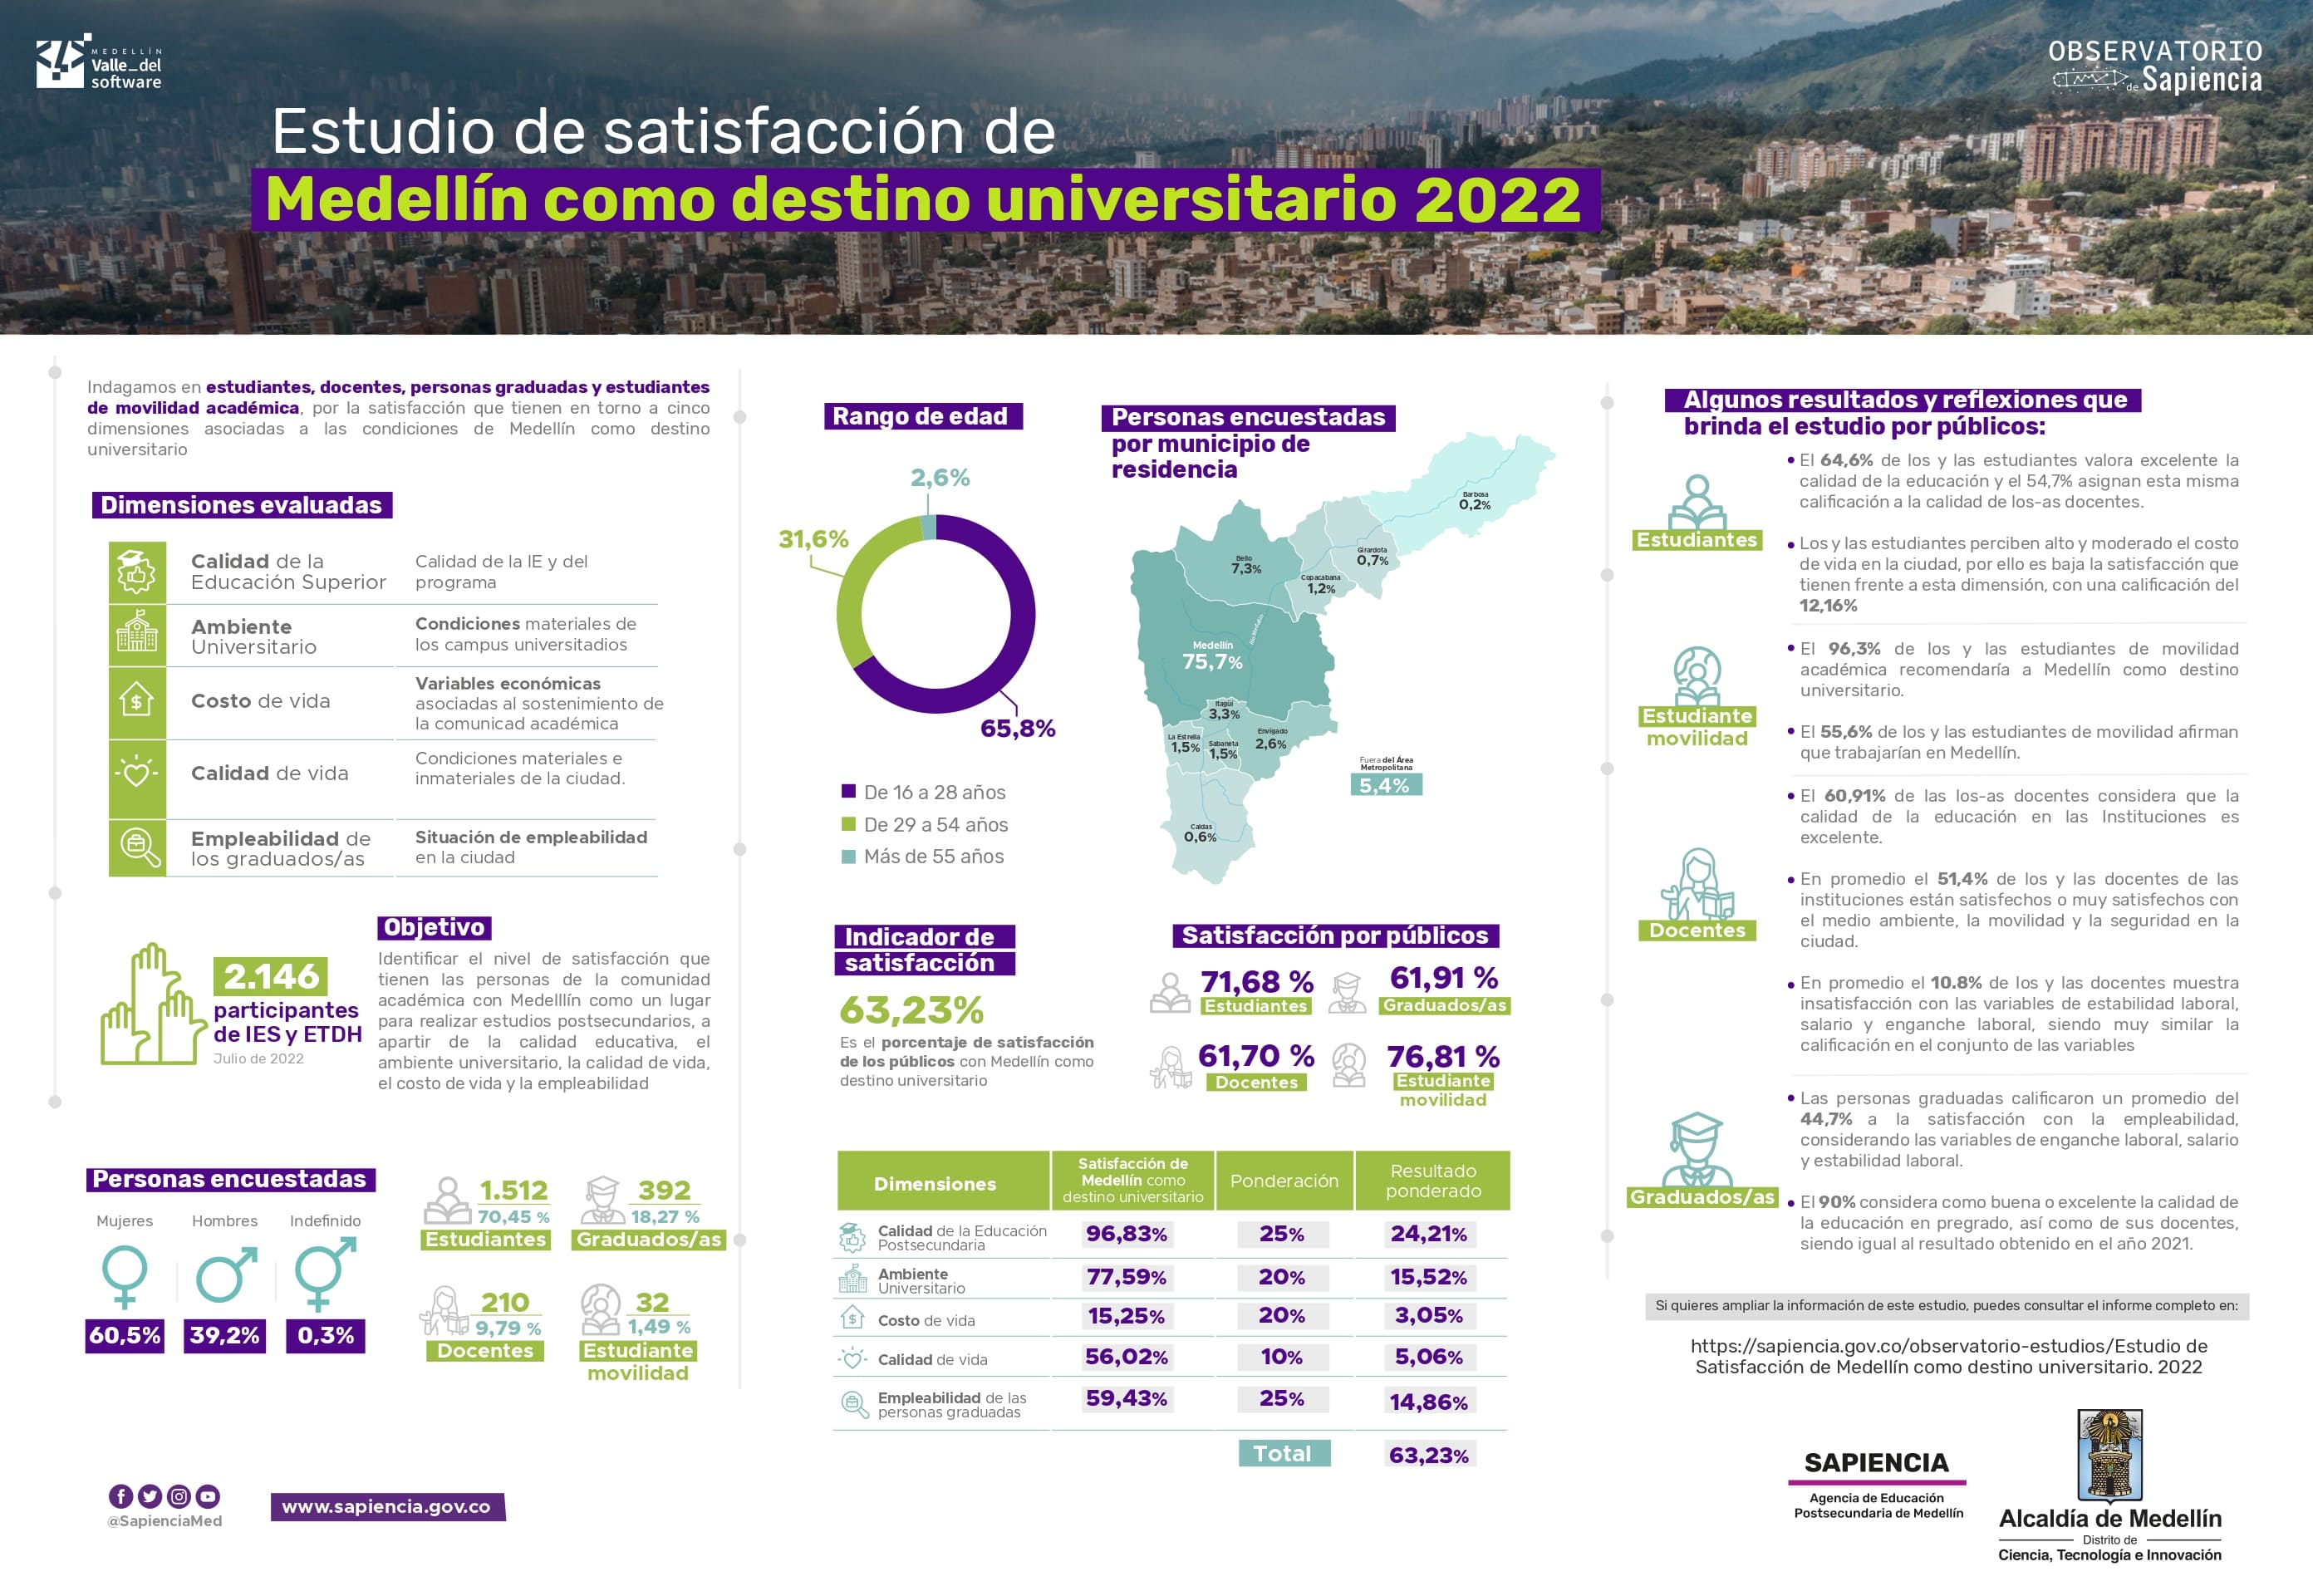 Infografía de estudio de Satisfacción de Medellín como destino universitario 2022 del Observatorio de Sapiencia